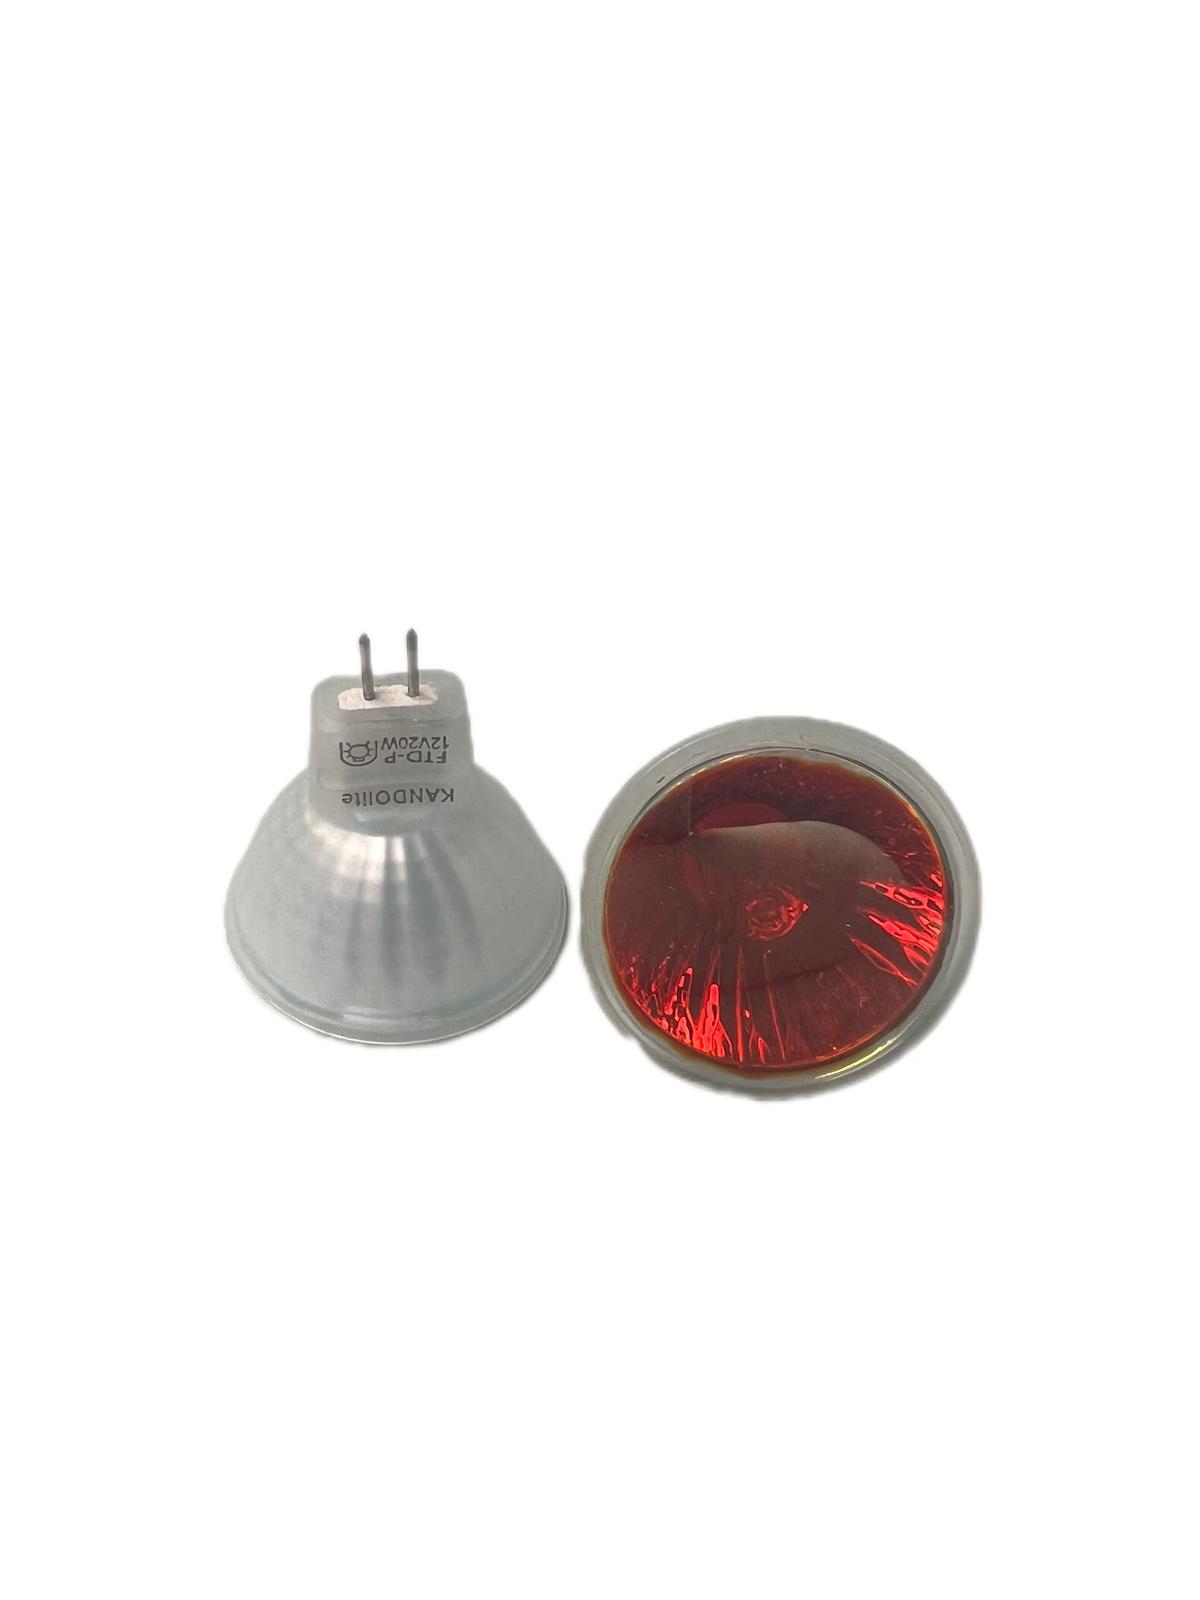 Halogenlampe mit Schutzglas rot 12V 20W MR11